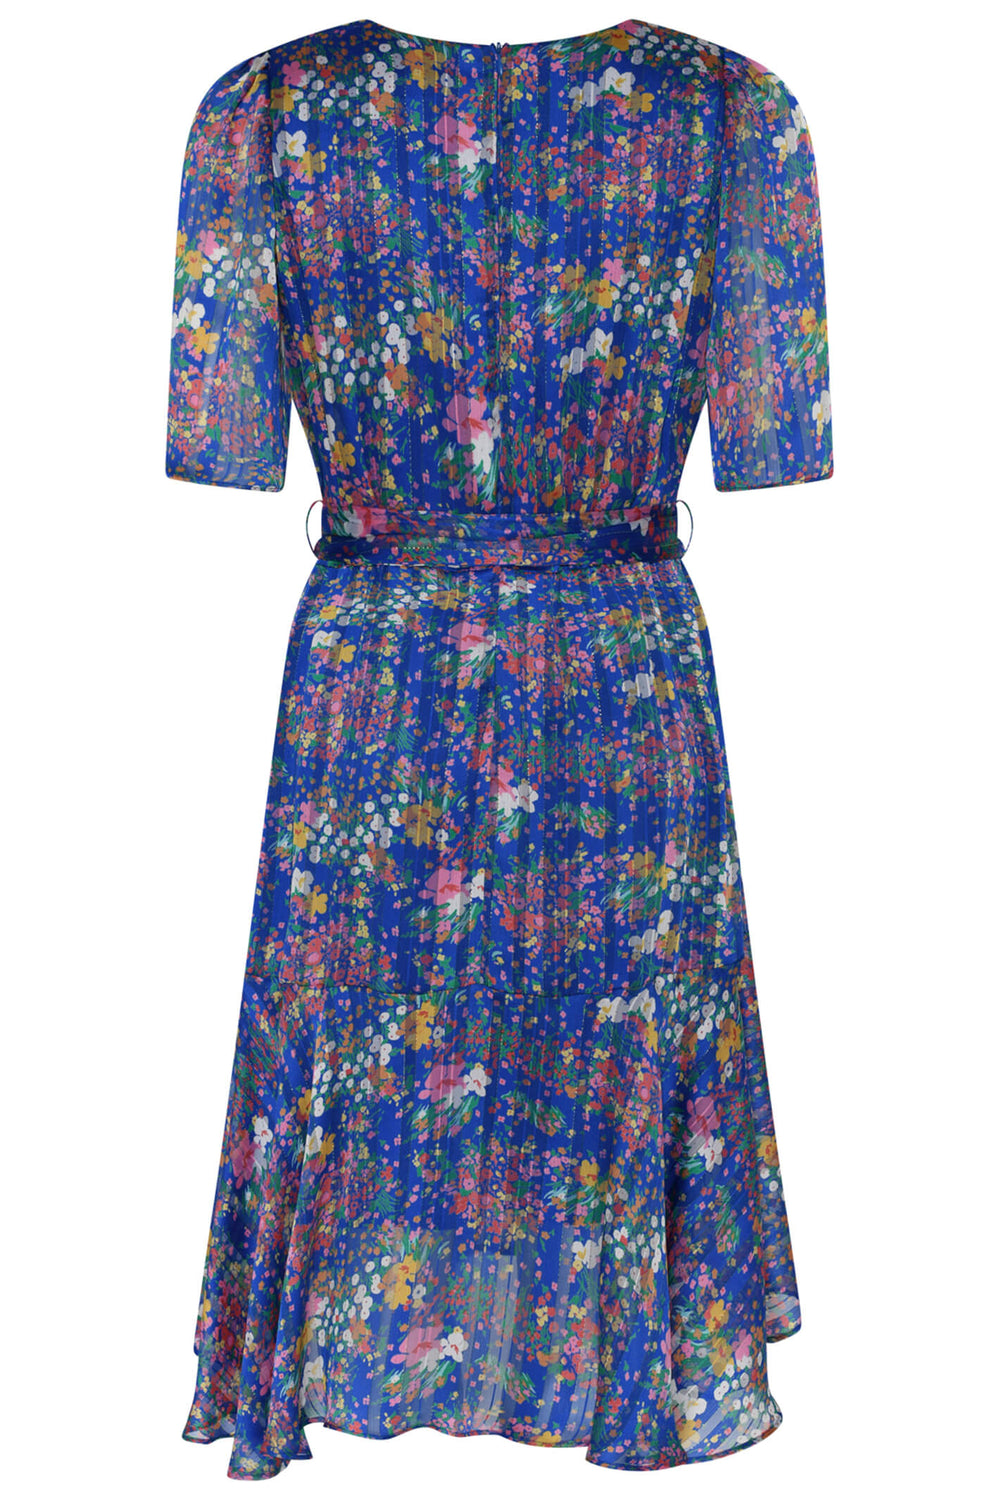 Tia 78589 Cobalt Blue Floral Dress - Experience Boutique